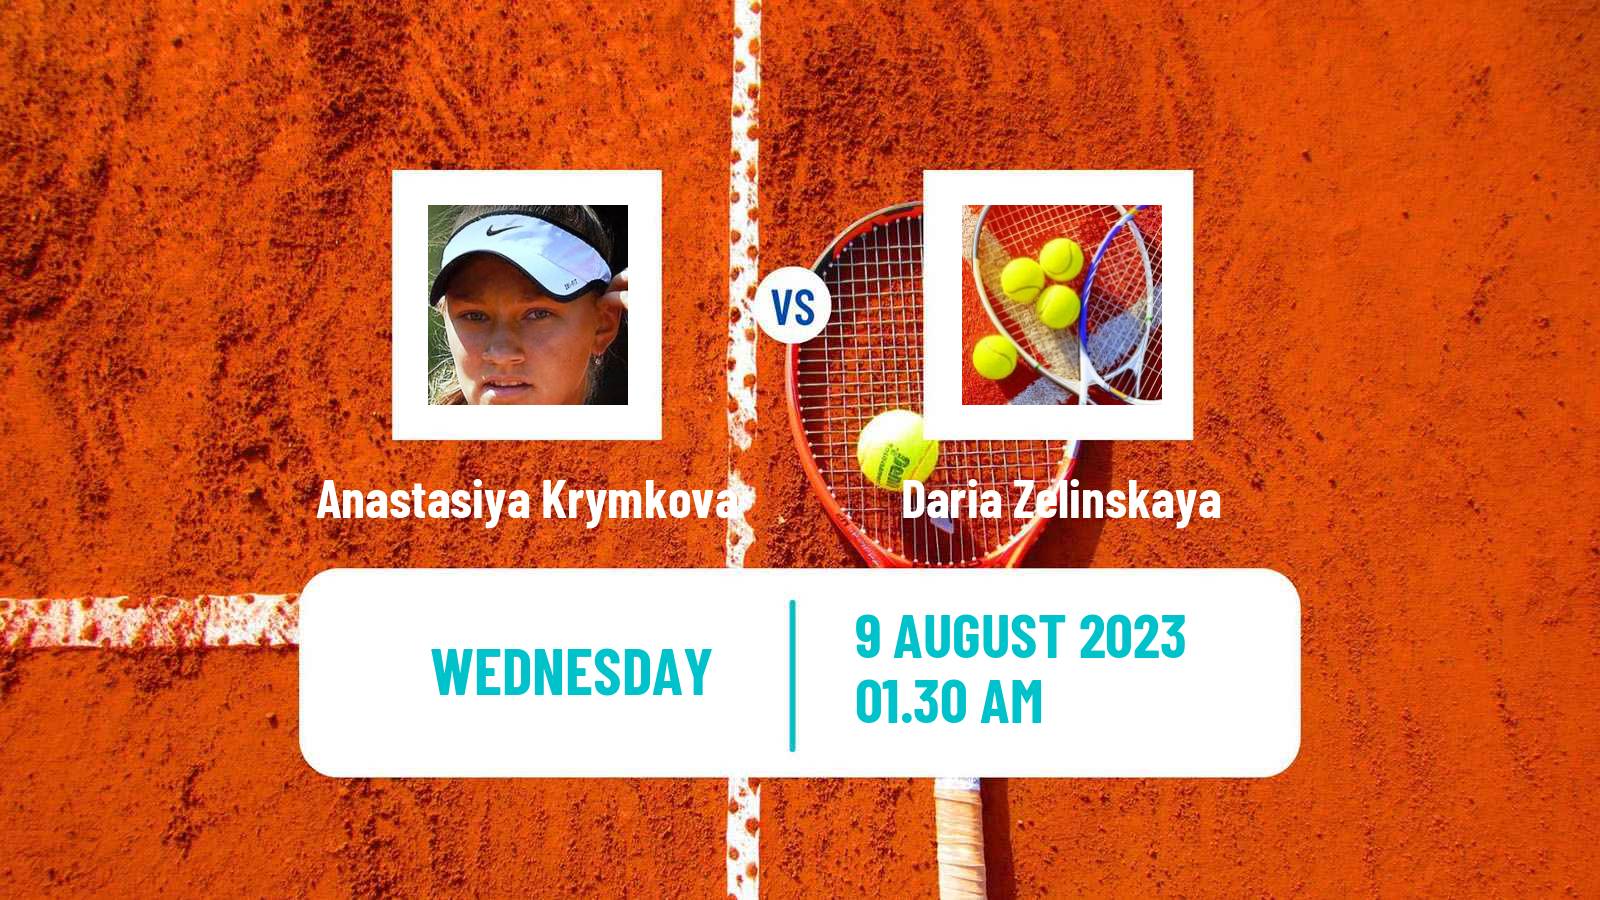 Tennis ITF W15 Ust Kamenogorsk Women Anastasiya Krymkova - Daria Zelinskaya